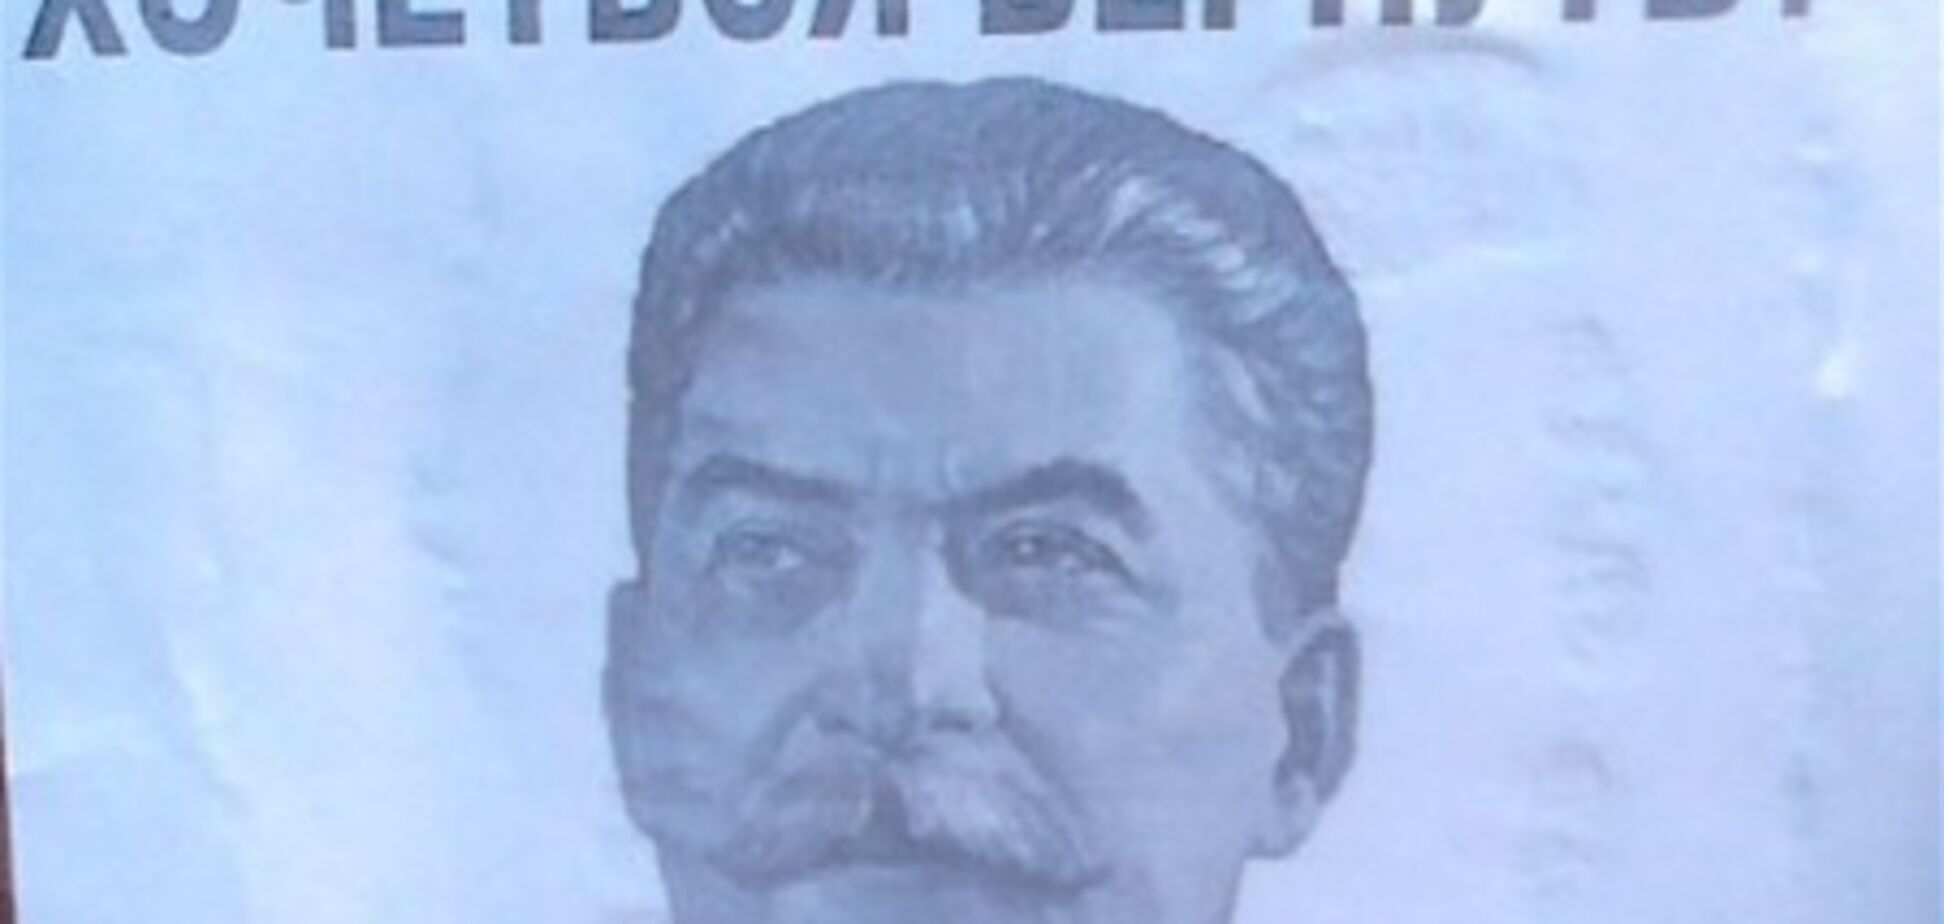 Під Луганськом розклеїли листівки із зображенням Сталіна